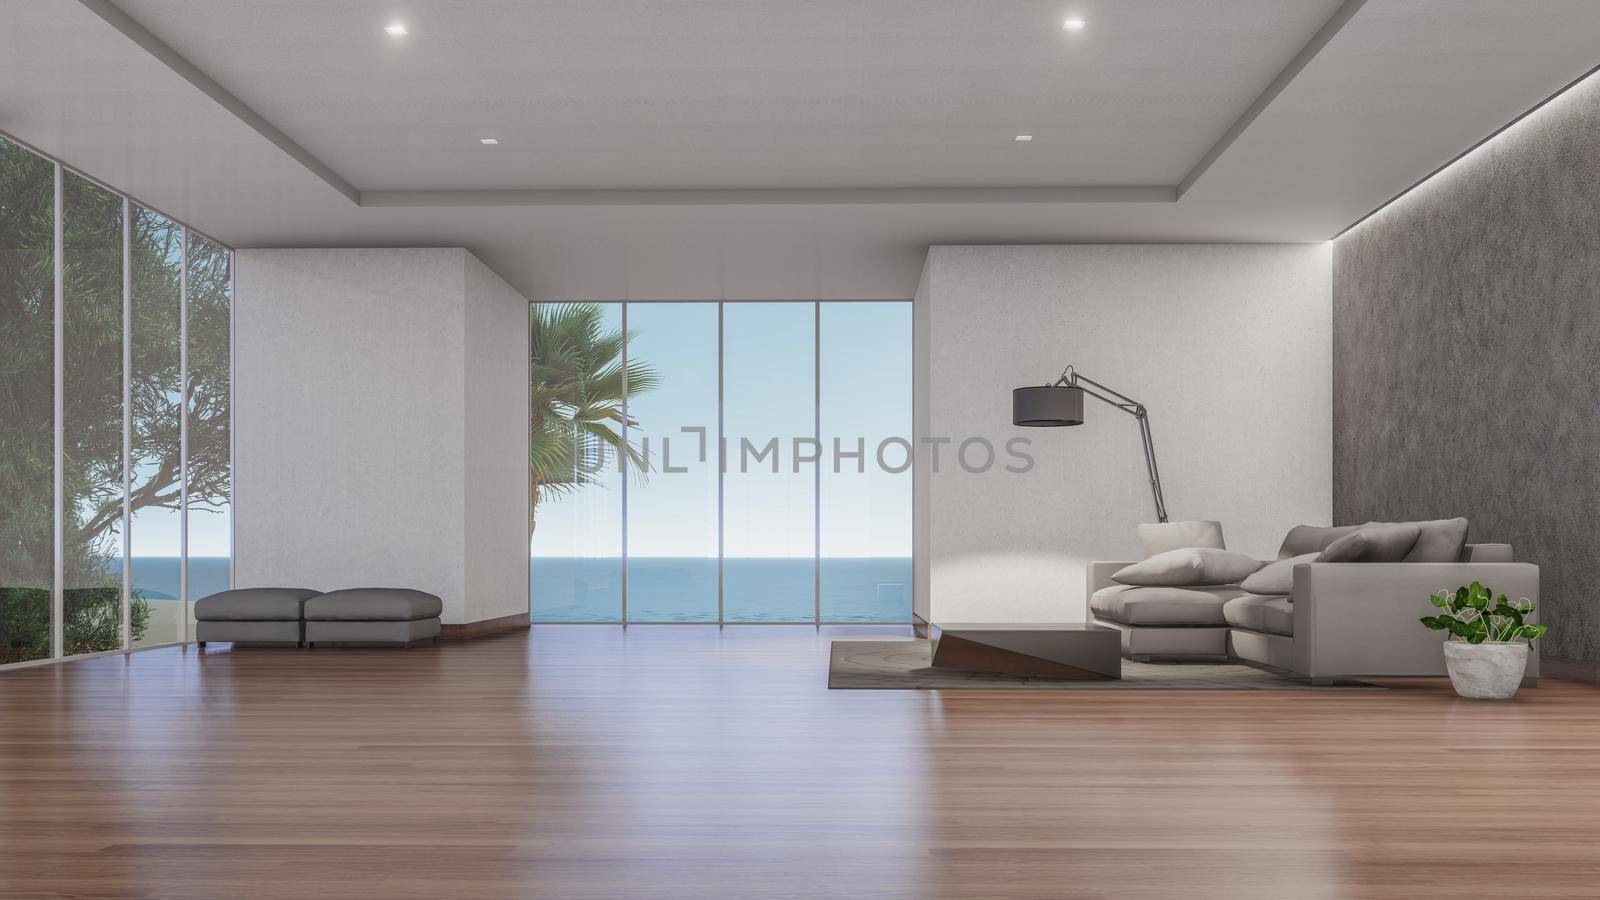 3D Interior Rendering Of Living Room Illustration by Arissuu1